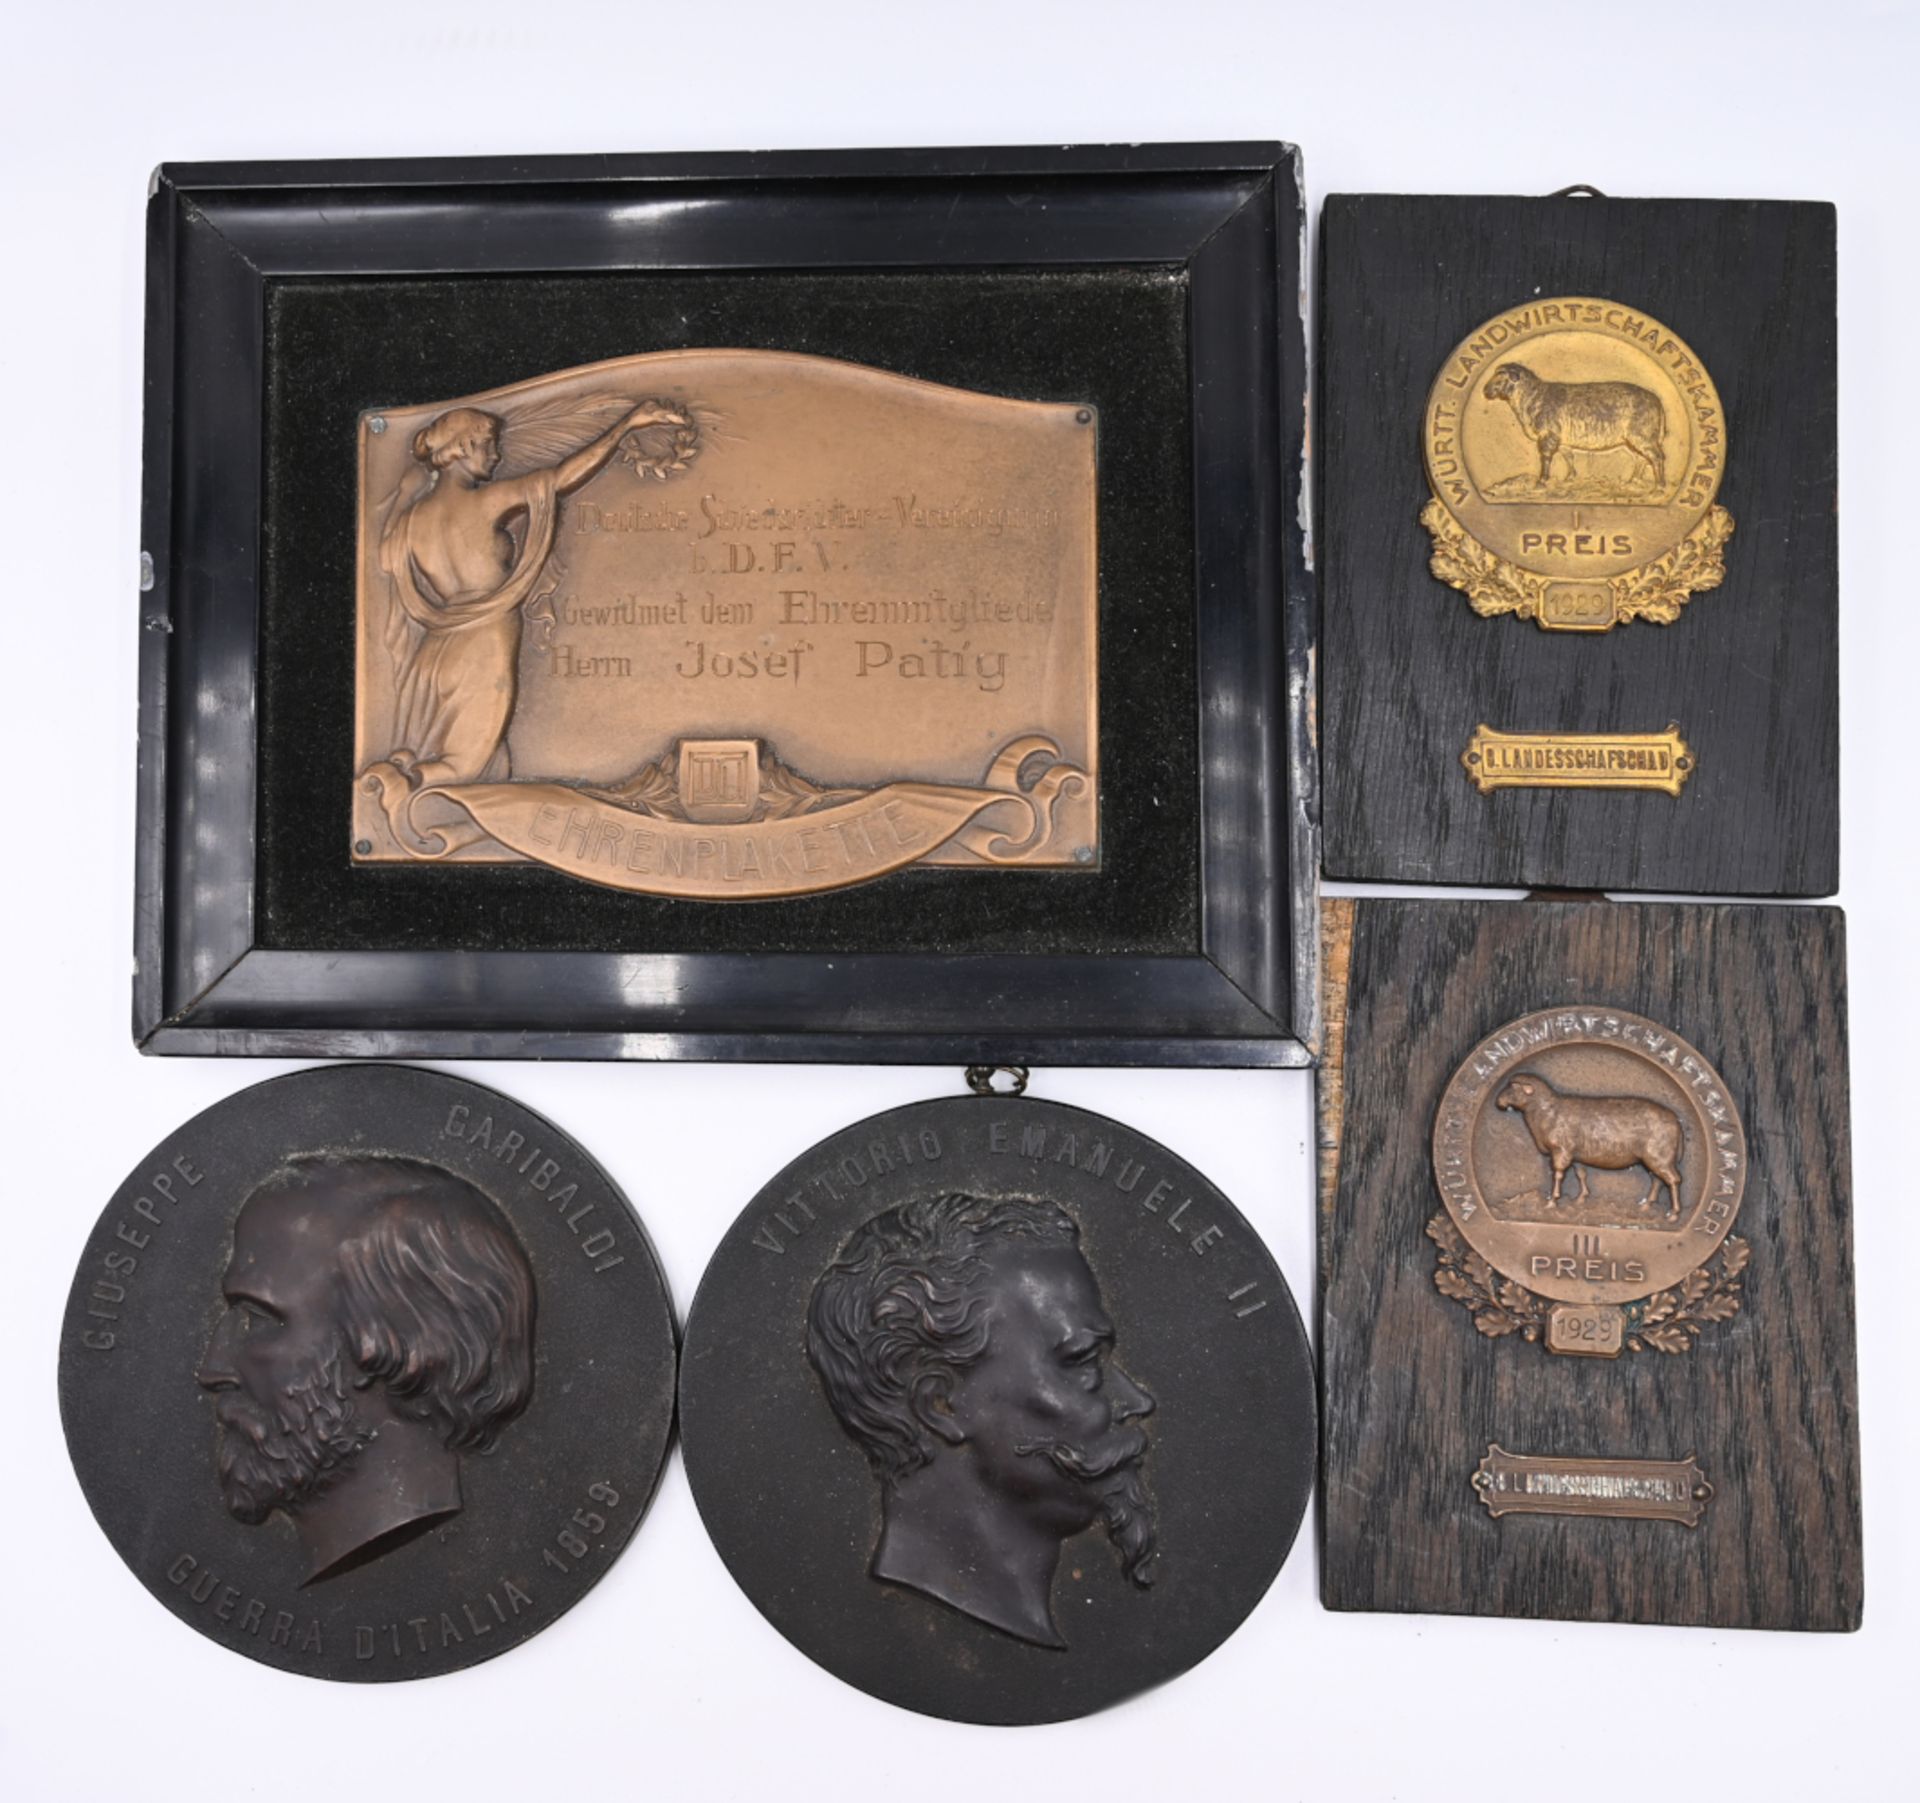 1 Konv. Medaillen, Plaketten u.a. versch. z.B.: "Brieftauben", "Landwirtschaftskammer", - Image 2 of 2